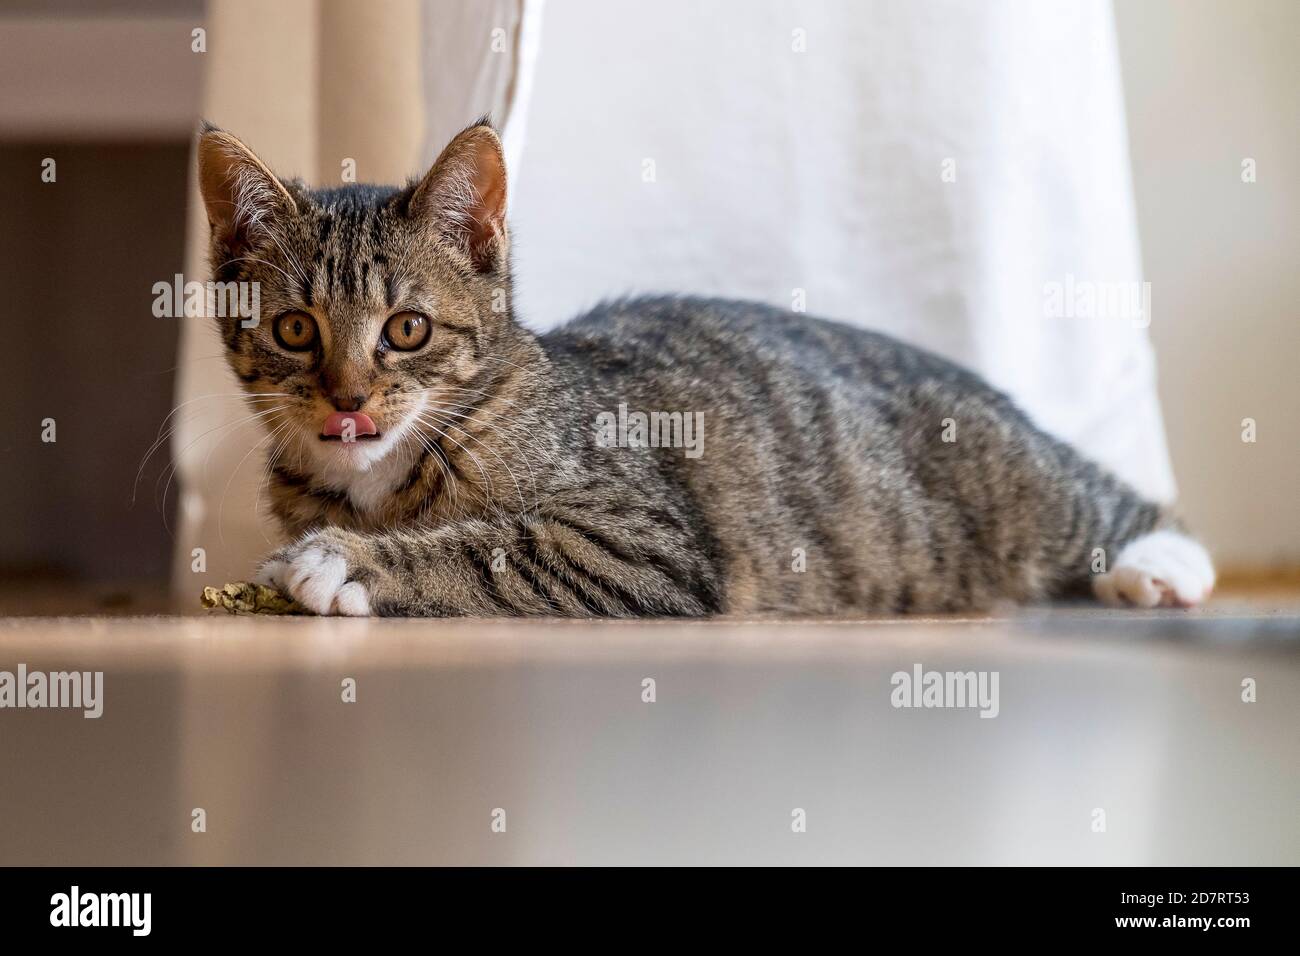 le chat tabby domestique joue à la maison Banque D'Images